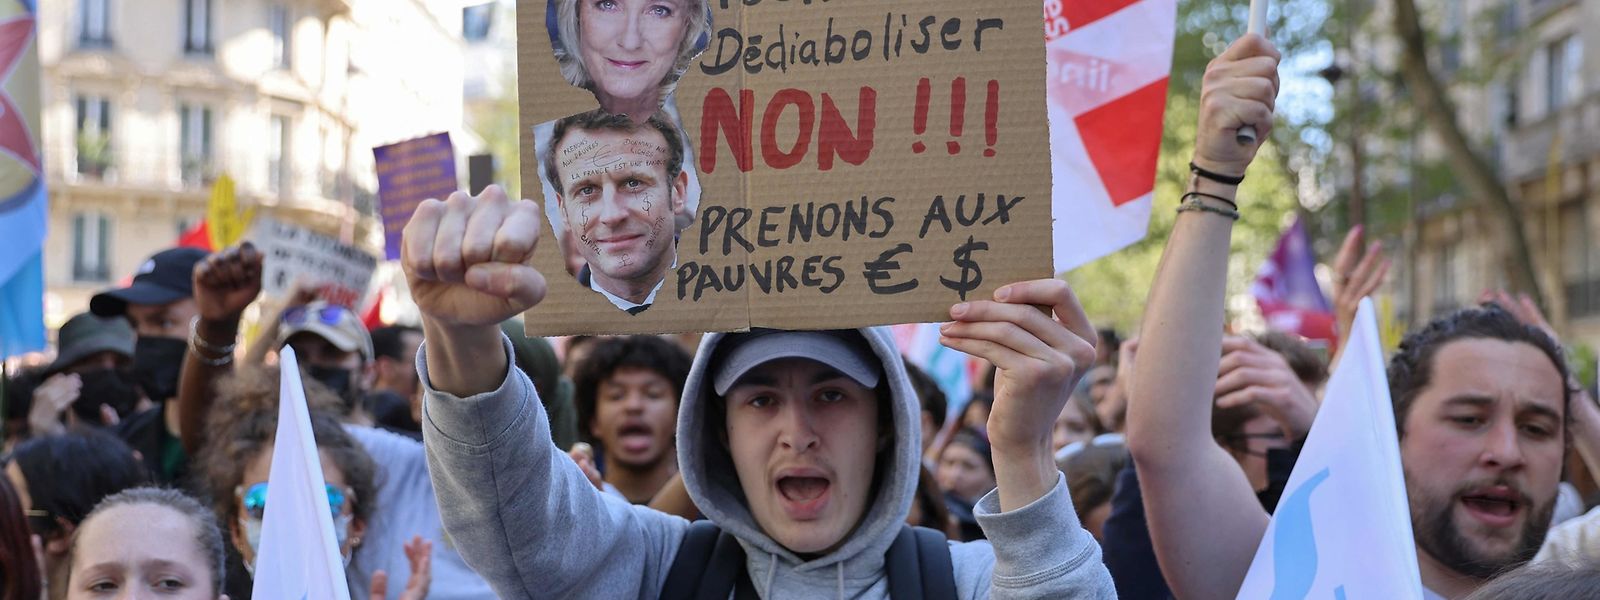 Dès l'entre-deux-tours, les militants se sont rassemblés pour manifester leur mécontentement face au choix qui s'imposait entre Le Pen et Macron, comme ici à Paris.